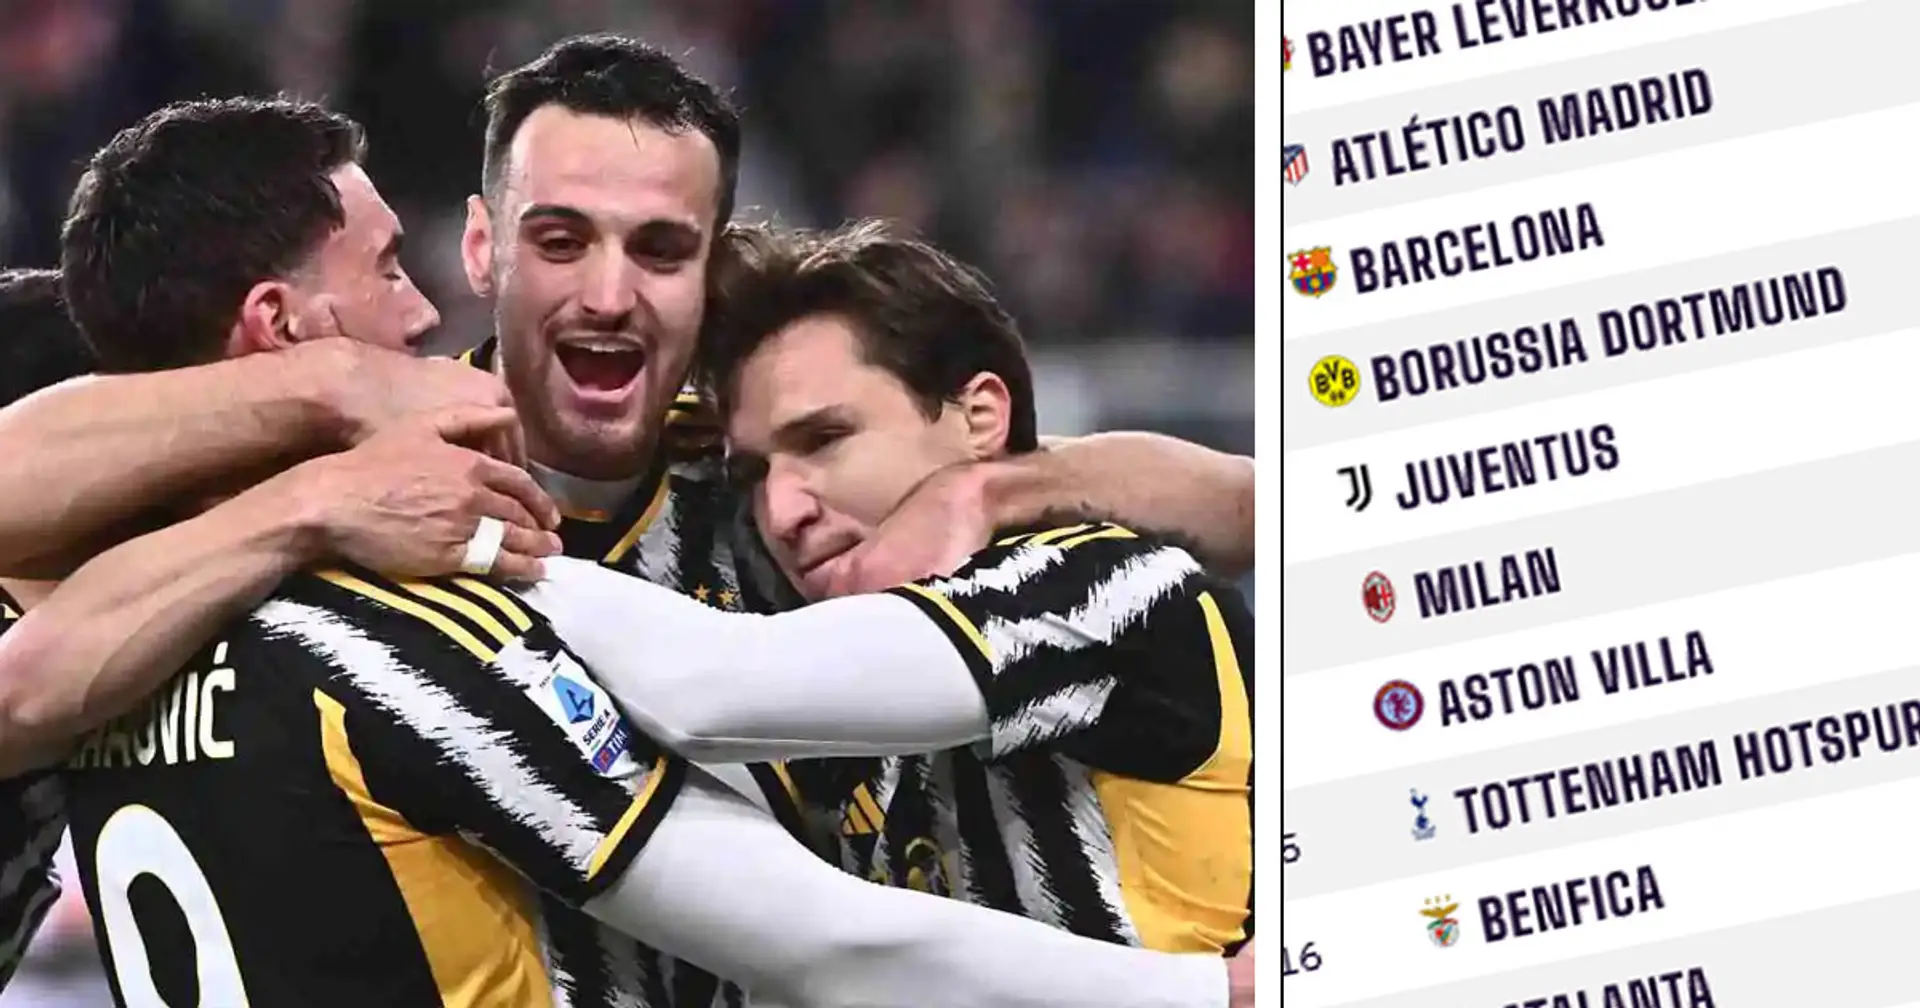 Svelate le migliori squadre al mondo secondo il Power Ranking: Juventus fuori dalla top 10